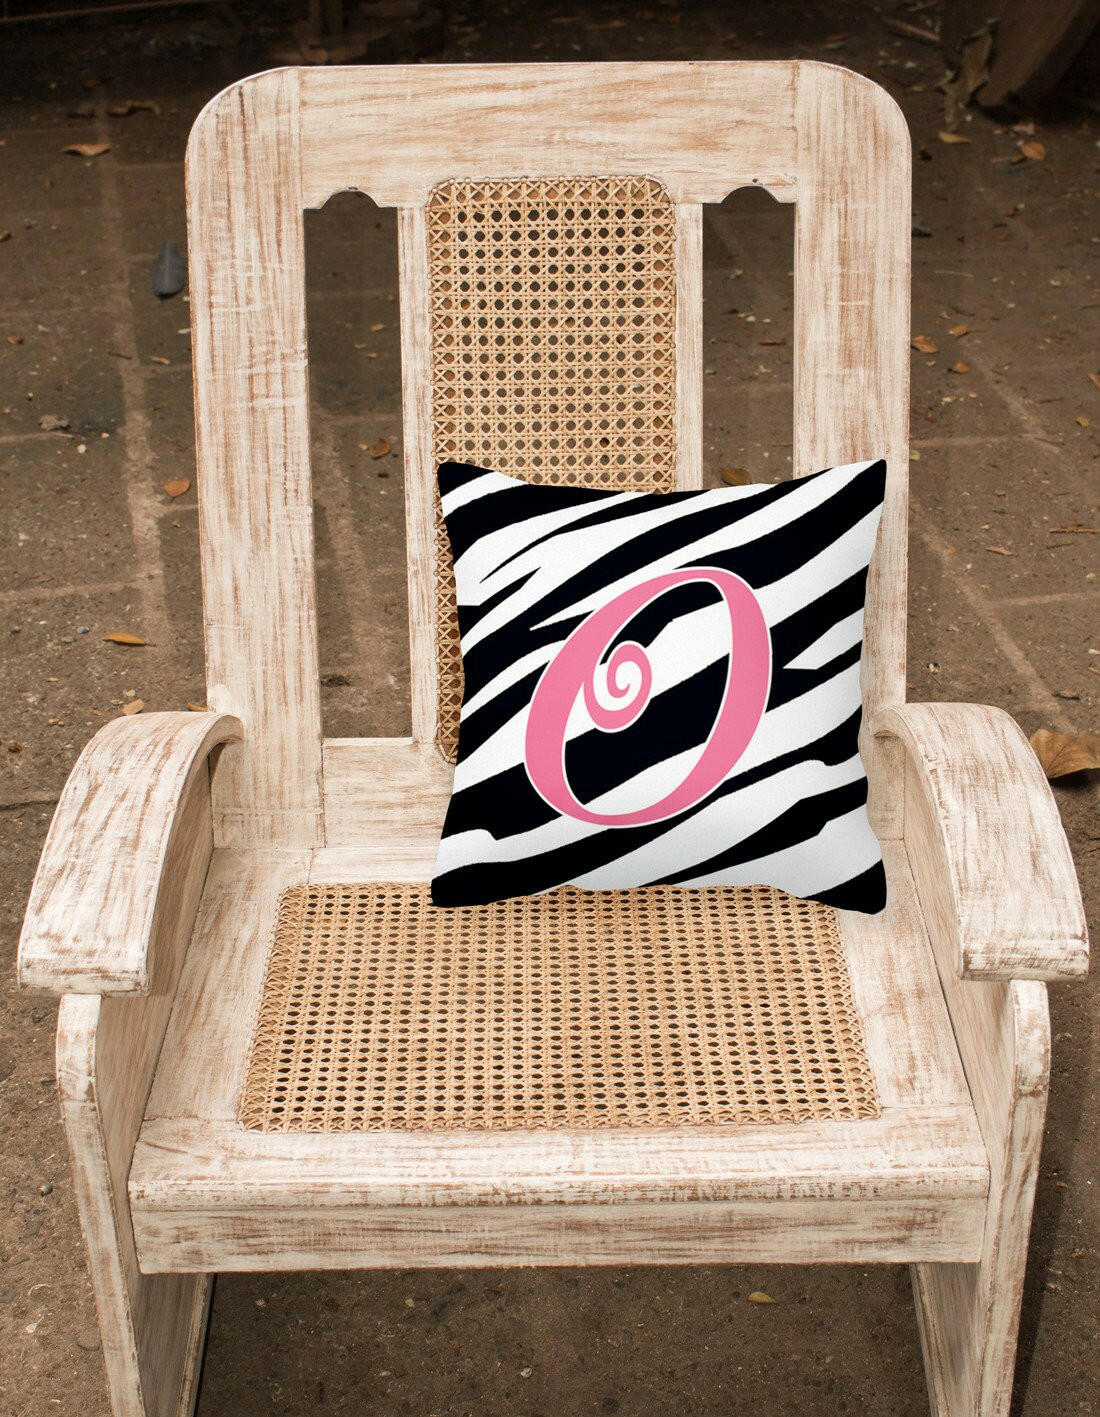 Monogram Initial O Zebra Stripe and Pink Decorative Canvas Fabric Pillow CJ1037 - the-store.com